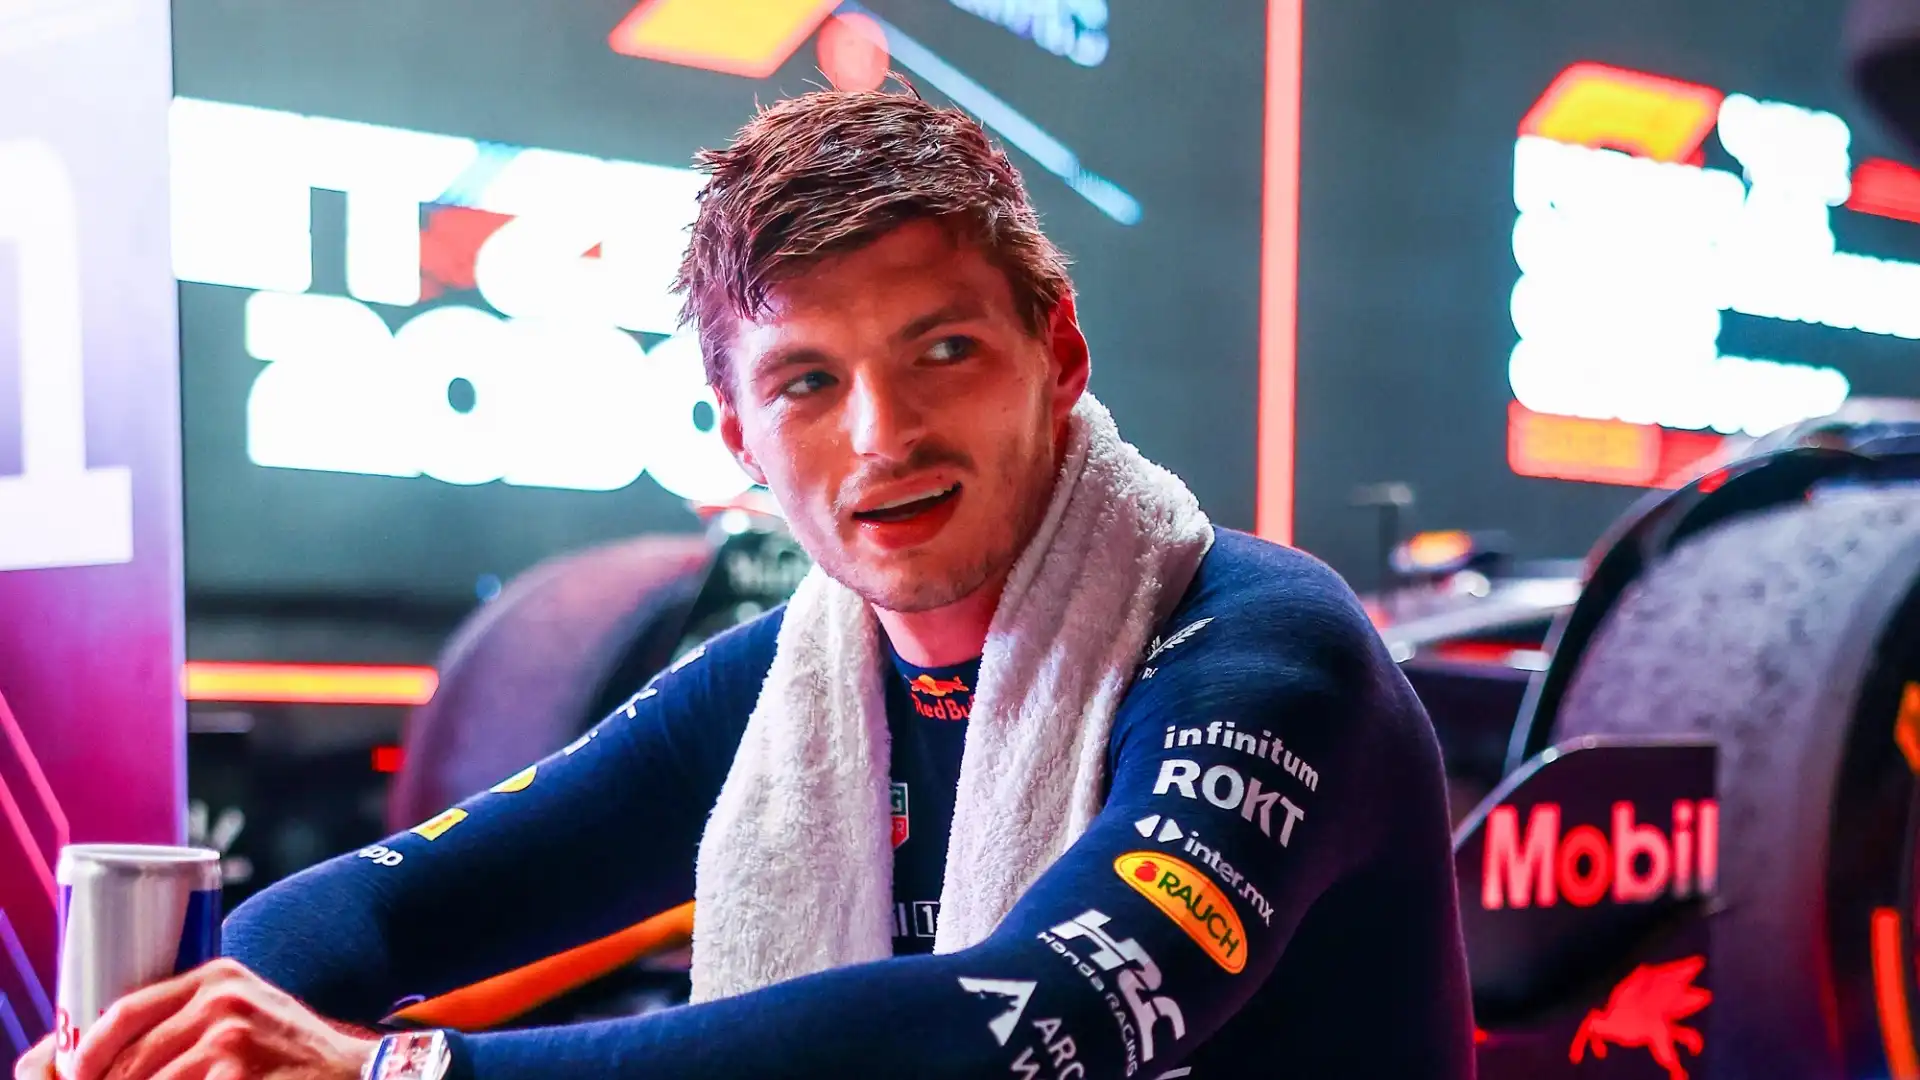 La Red Bull avrebbe fatto una proposta clamorosa a Max Verstappen, riportano i rumors